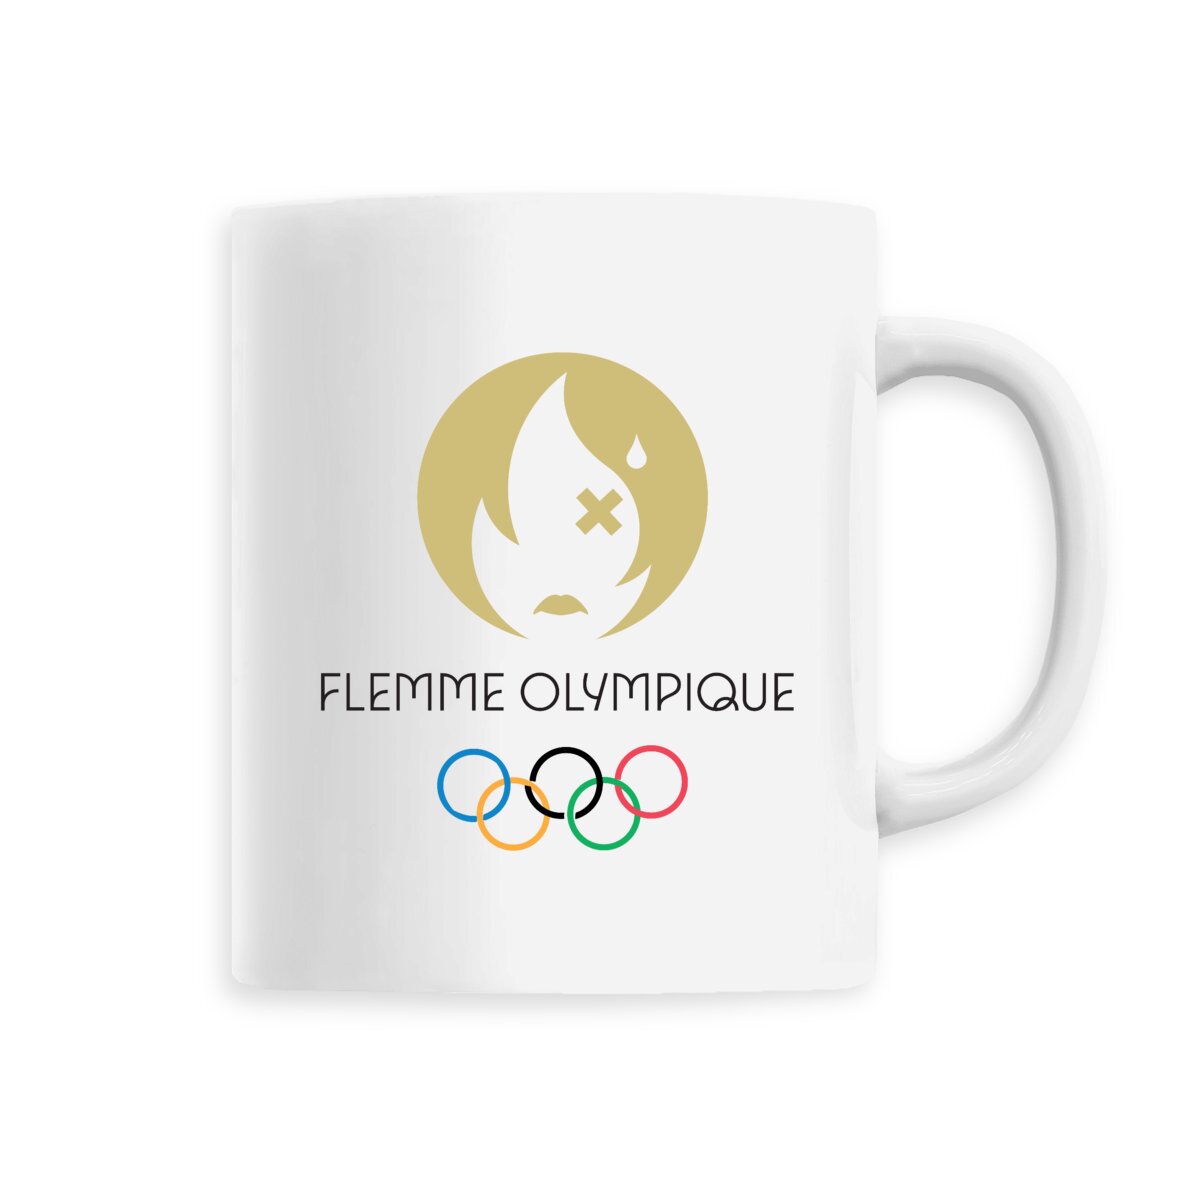 Le mug de la flemme olympique